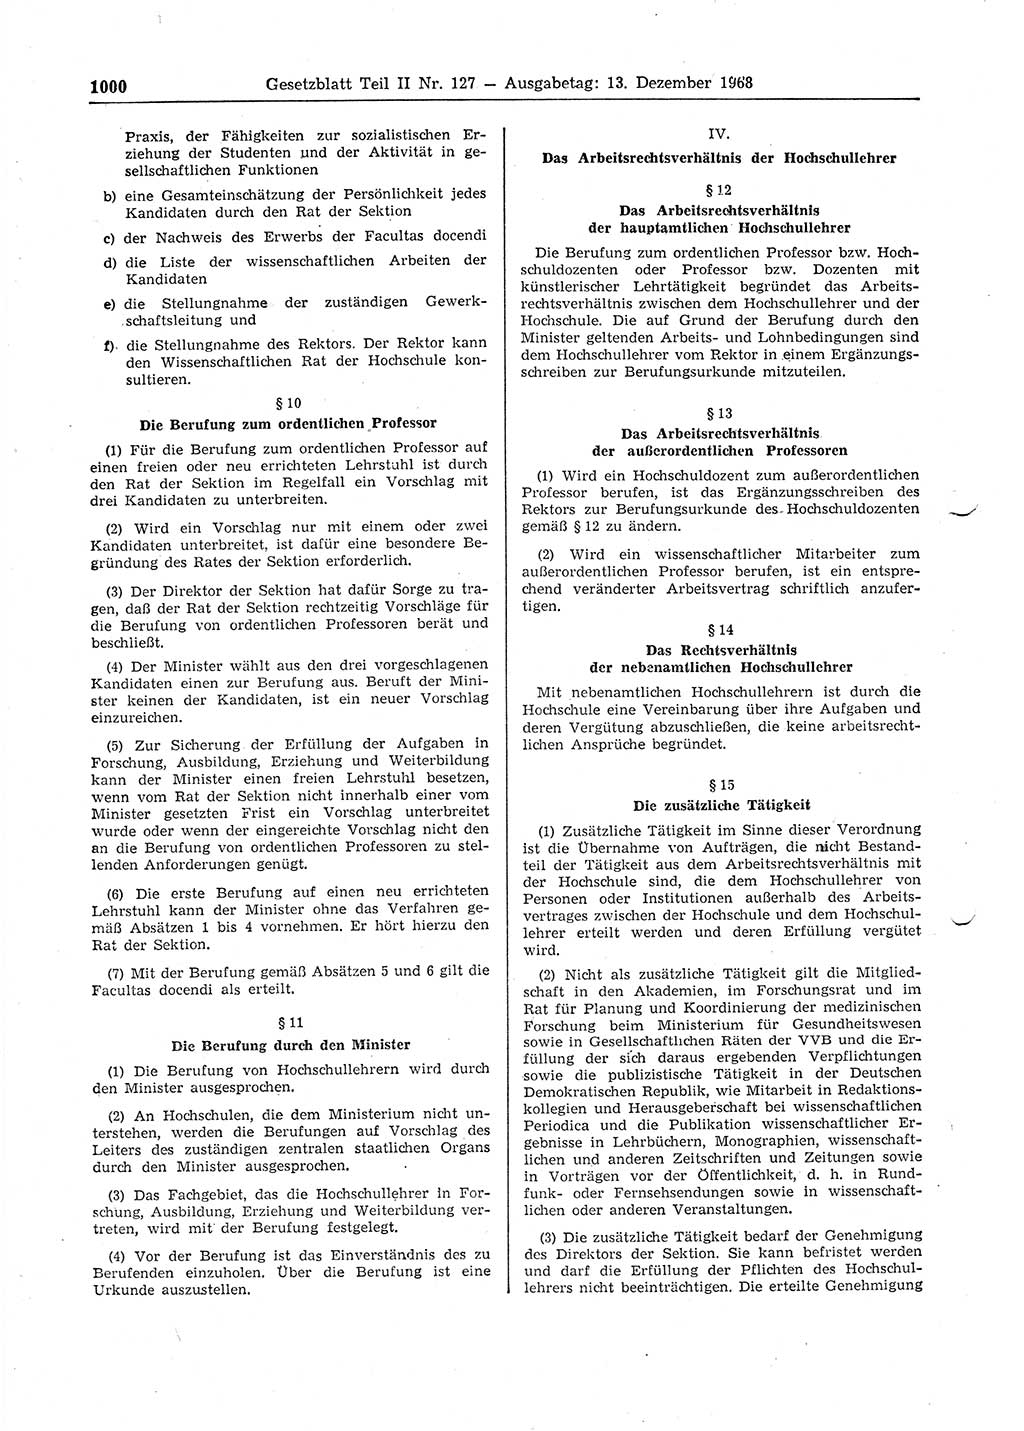 Gesetzblatt (GBl.) der Deutschen Demokratischen Republik (DDR) Teil ⅠⅠ 1968, Seite 1000 (GBl. DDR ⅠⅠ 1968, S. 1000)